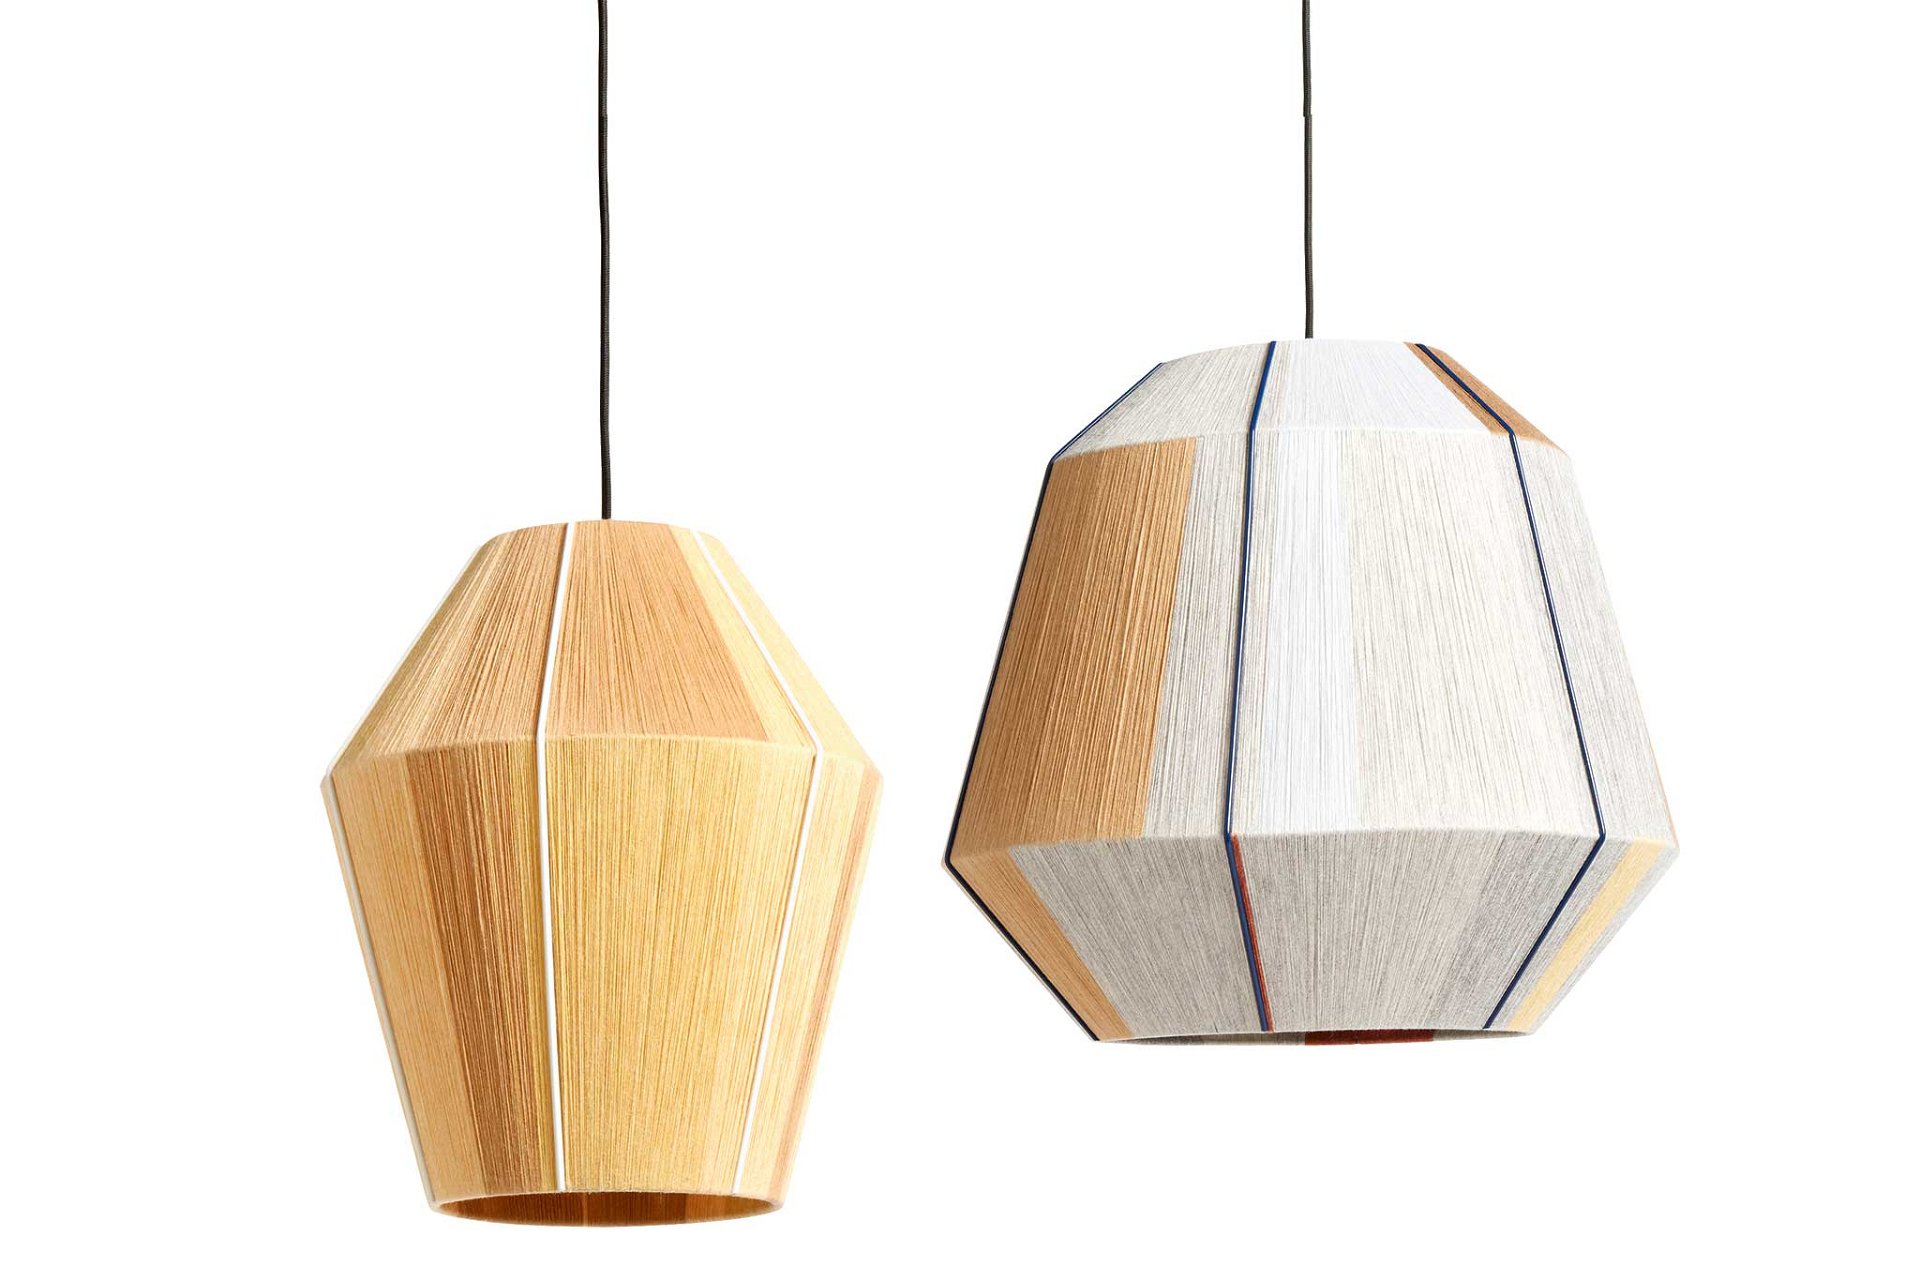 Design-Zucker Hay lanciert eine neue Serie der Kult-Lampe »Bonbon« von Ana Kraš. Das Sofa »Can« unten bringt noch mehr Farbe ins Spiel. 